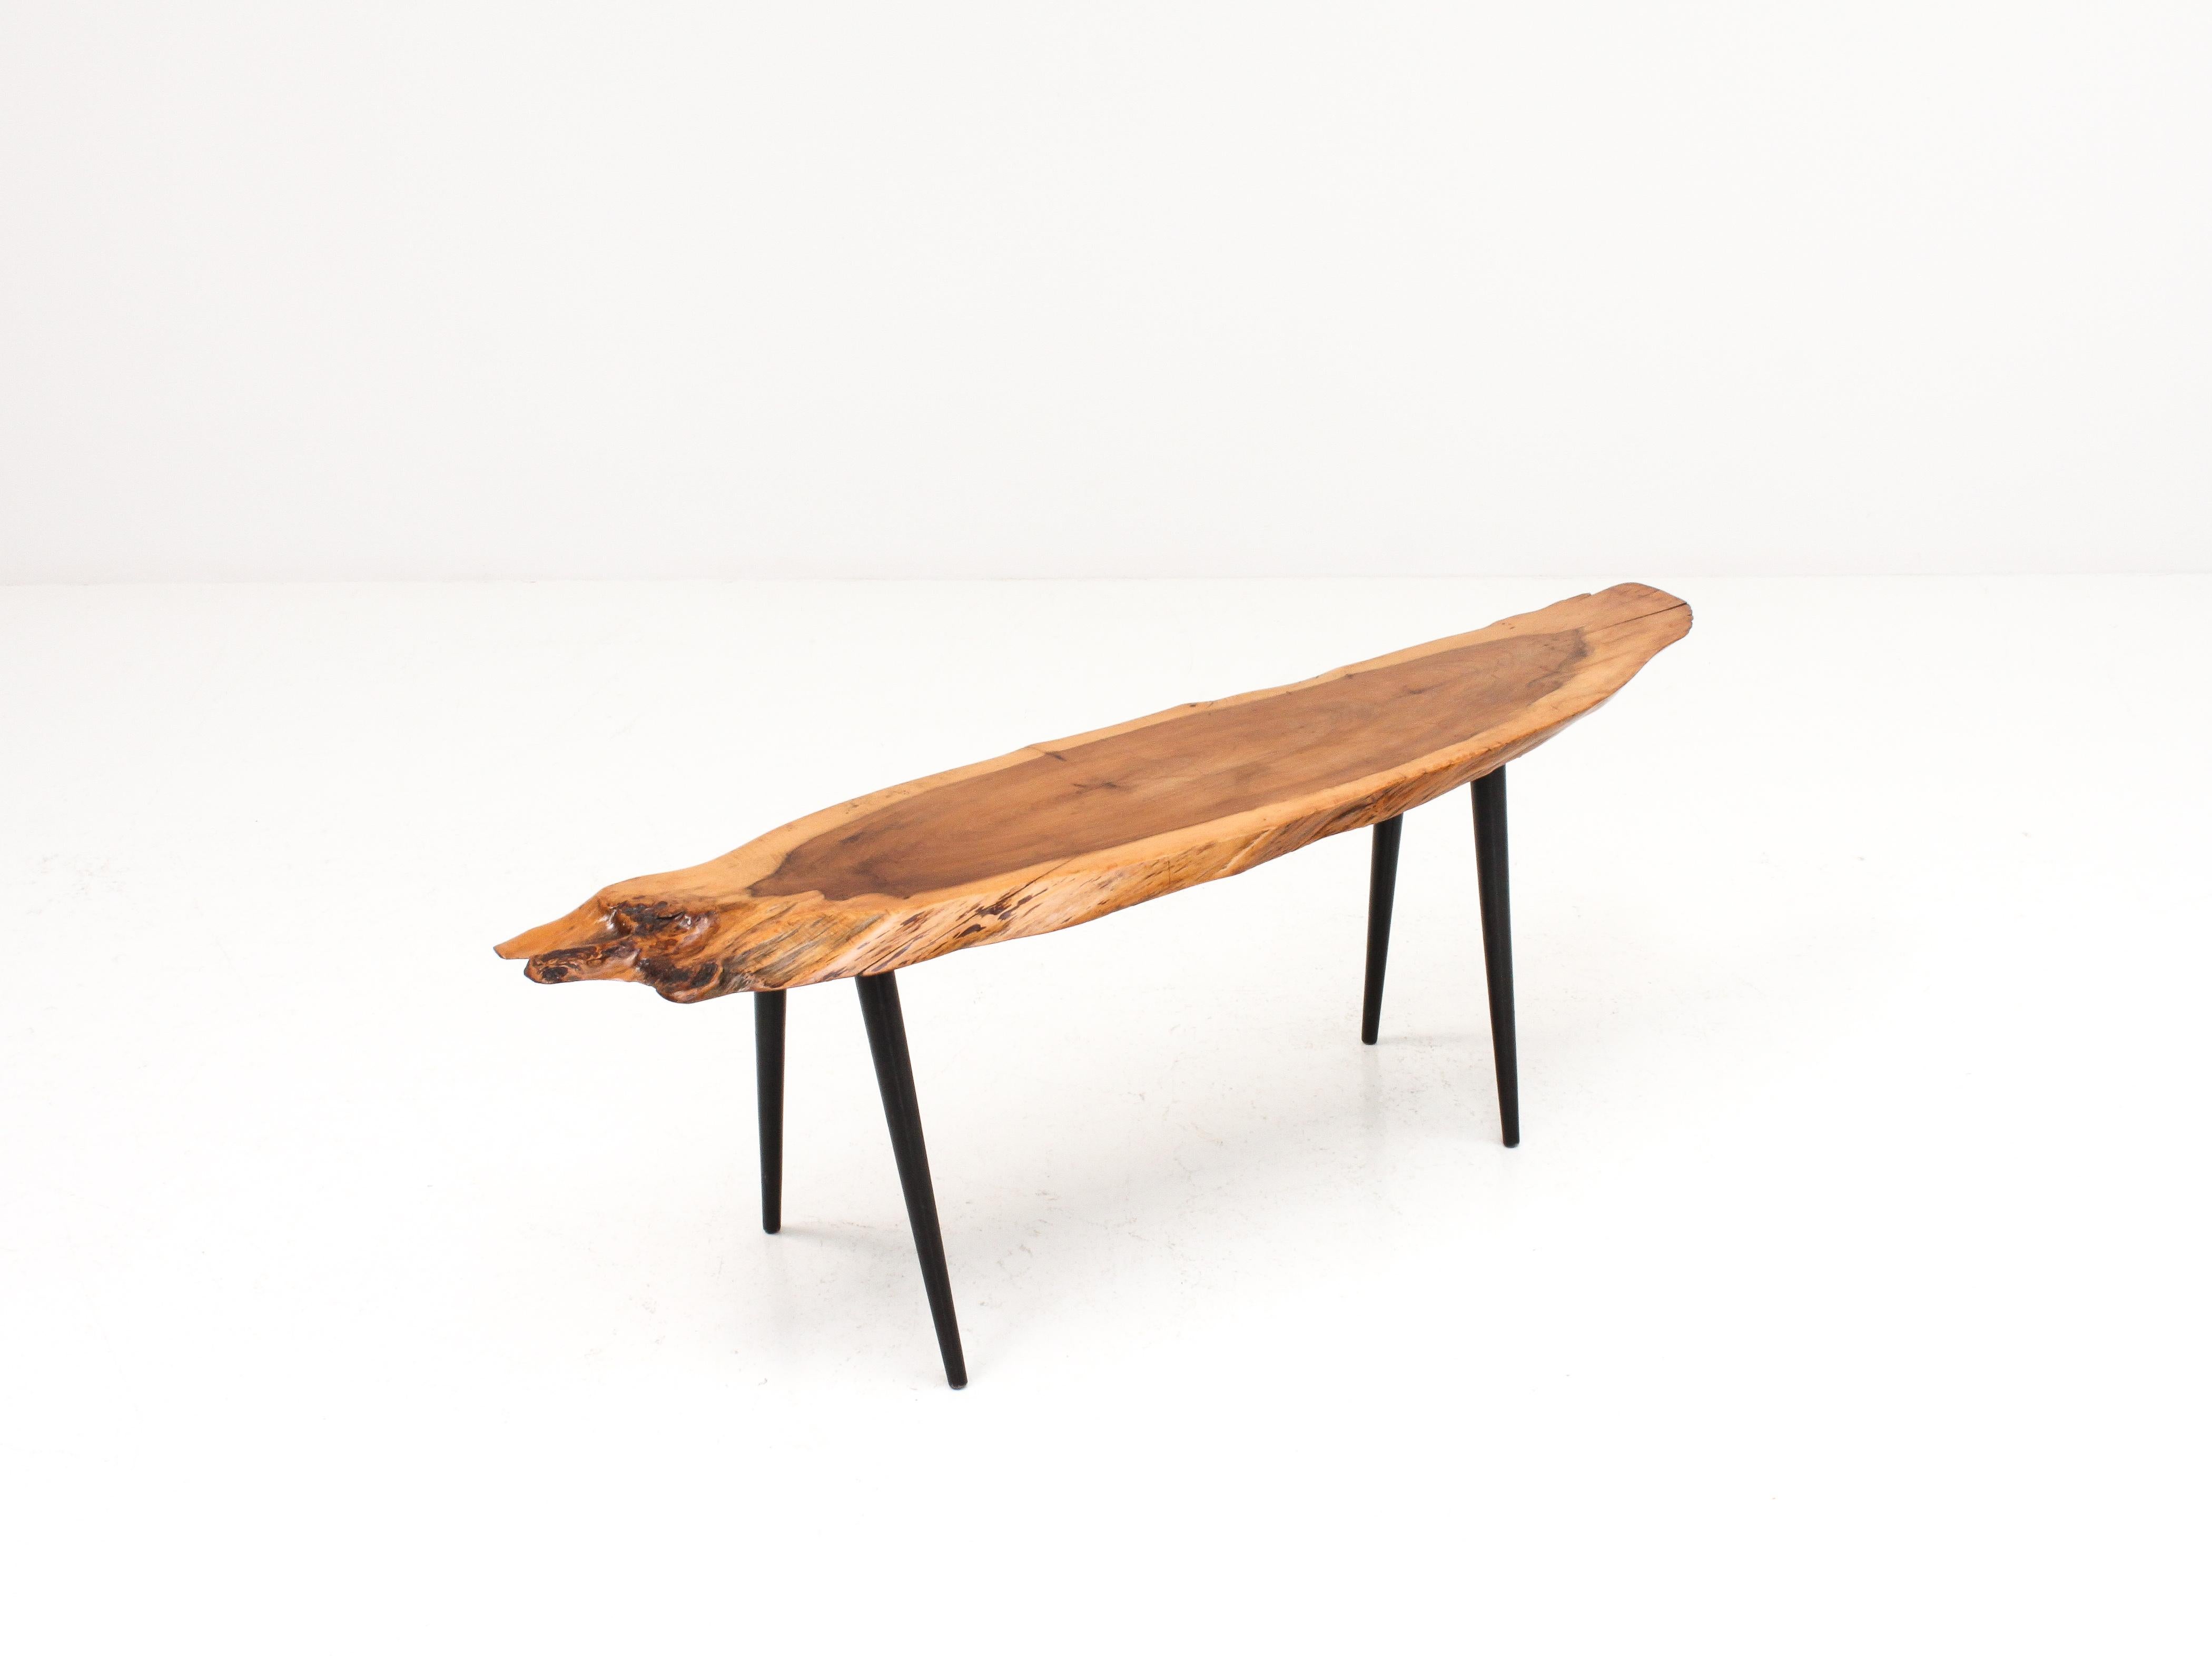 Ein Couchtisch aus den 1960er Jahren mit einer Tischplatte aus massivem Eibenholz, der durch seine organische Ästhetik besticht und auf schrägen, konischen Beinen steht. 

Der Zustand ist insgesamt gut, mit leichten Gebrauchsspuren, wie es sich für